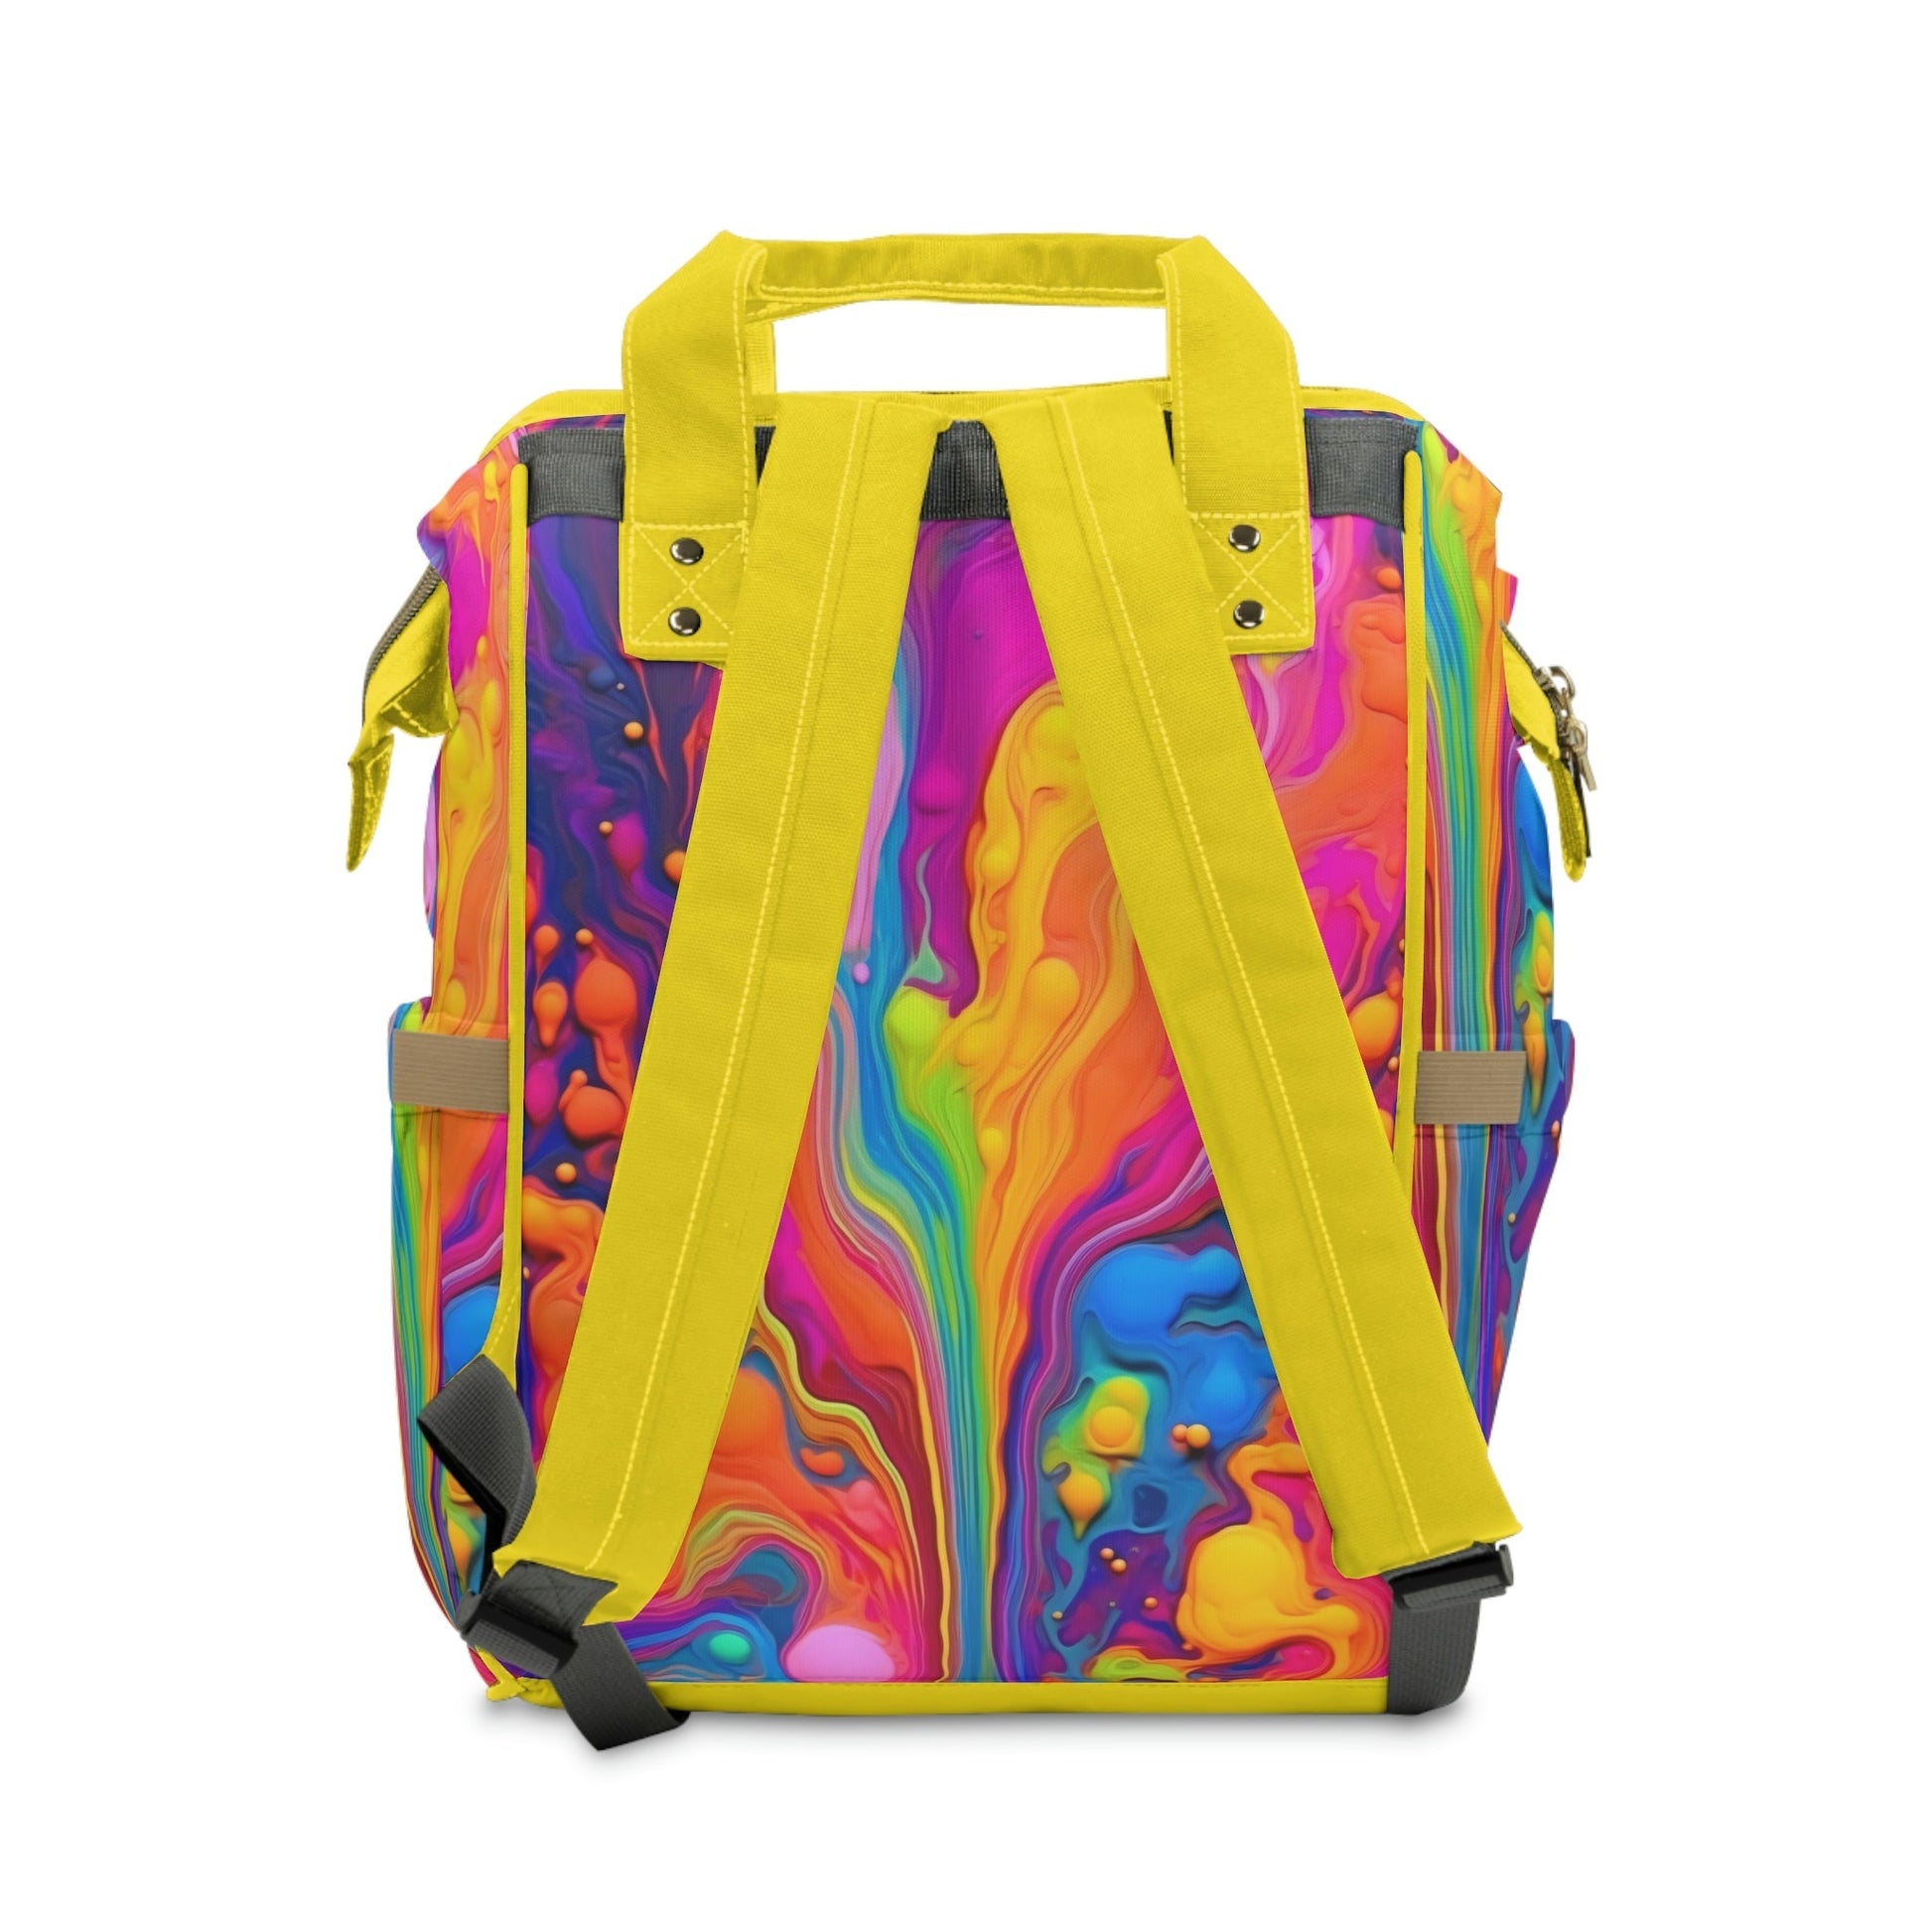 Backpack Bag in Rainbow Flow - Modern Kastle Shop